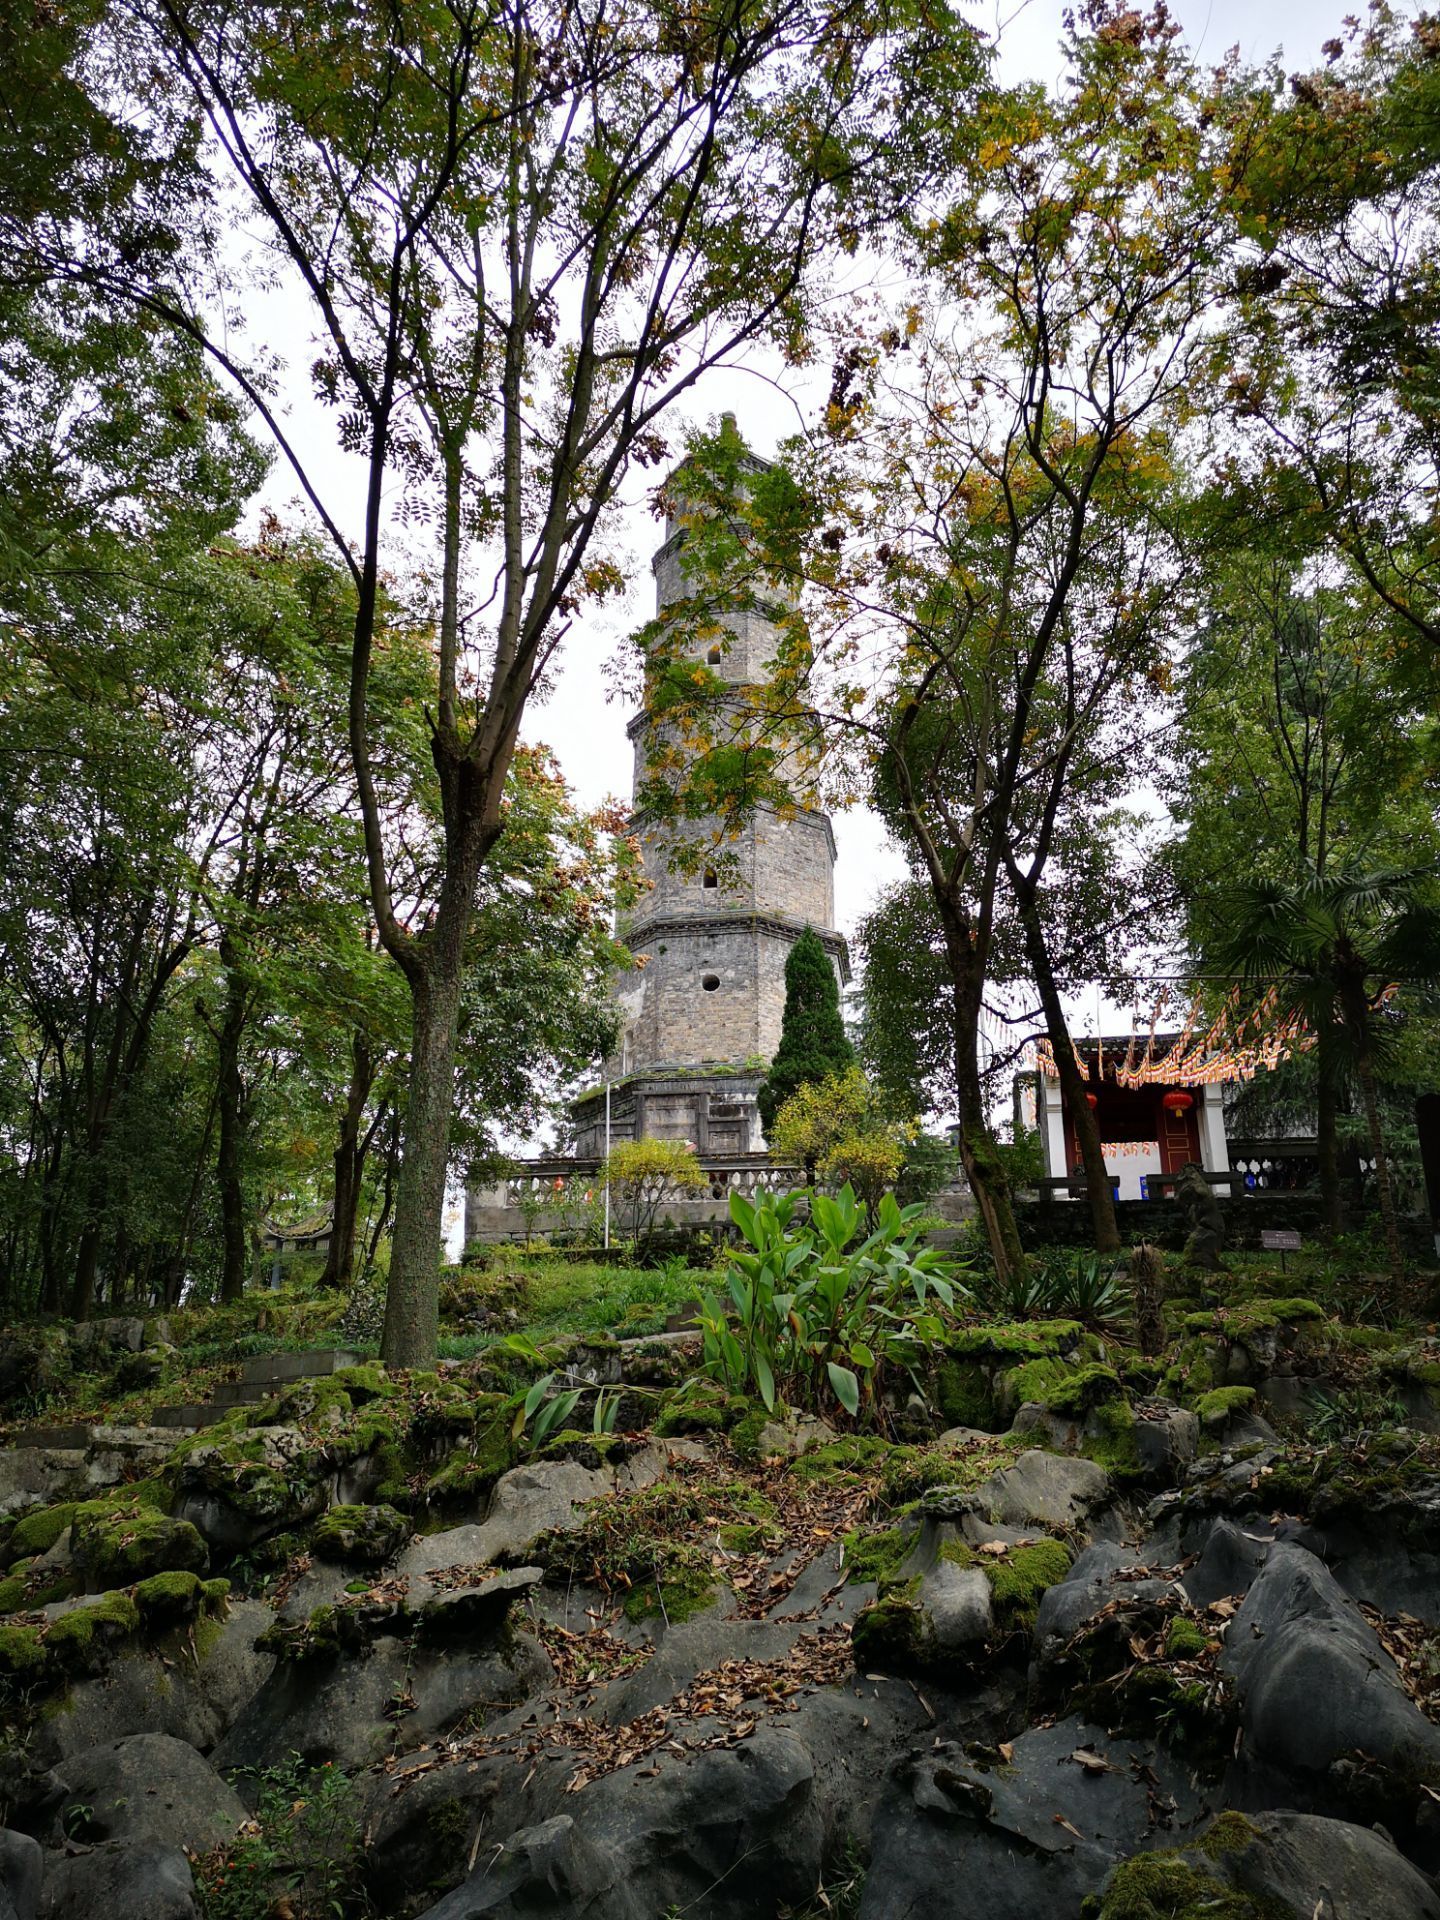 连珠塔,位于湖北省恩施市五峰山第一峰龙首峰,始建于清道光十二年,塔